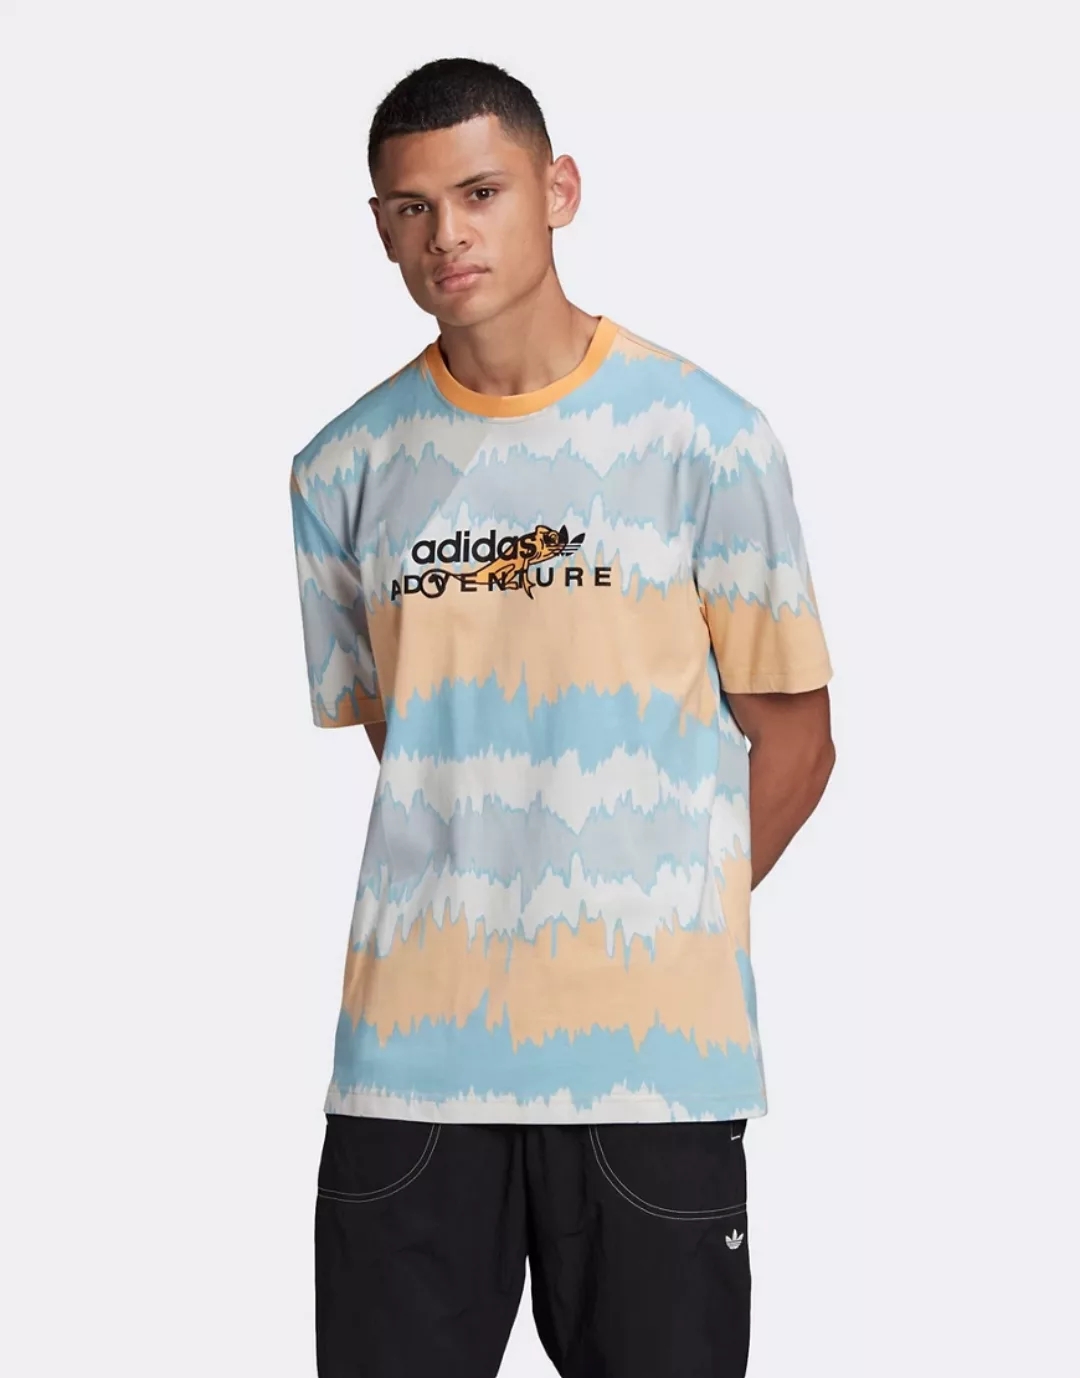 adidas Originals – Adventure – T-Shirt in Orange mit Wellenprint günstig online kaufen